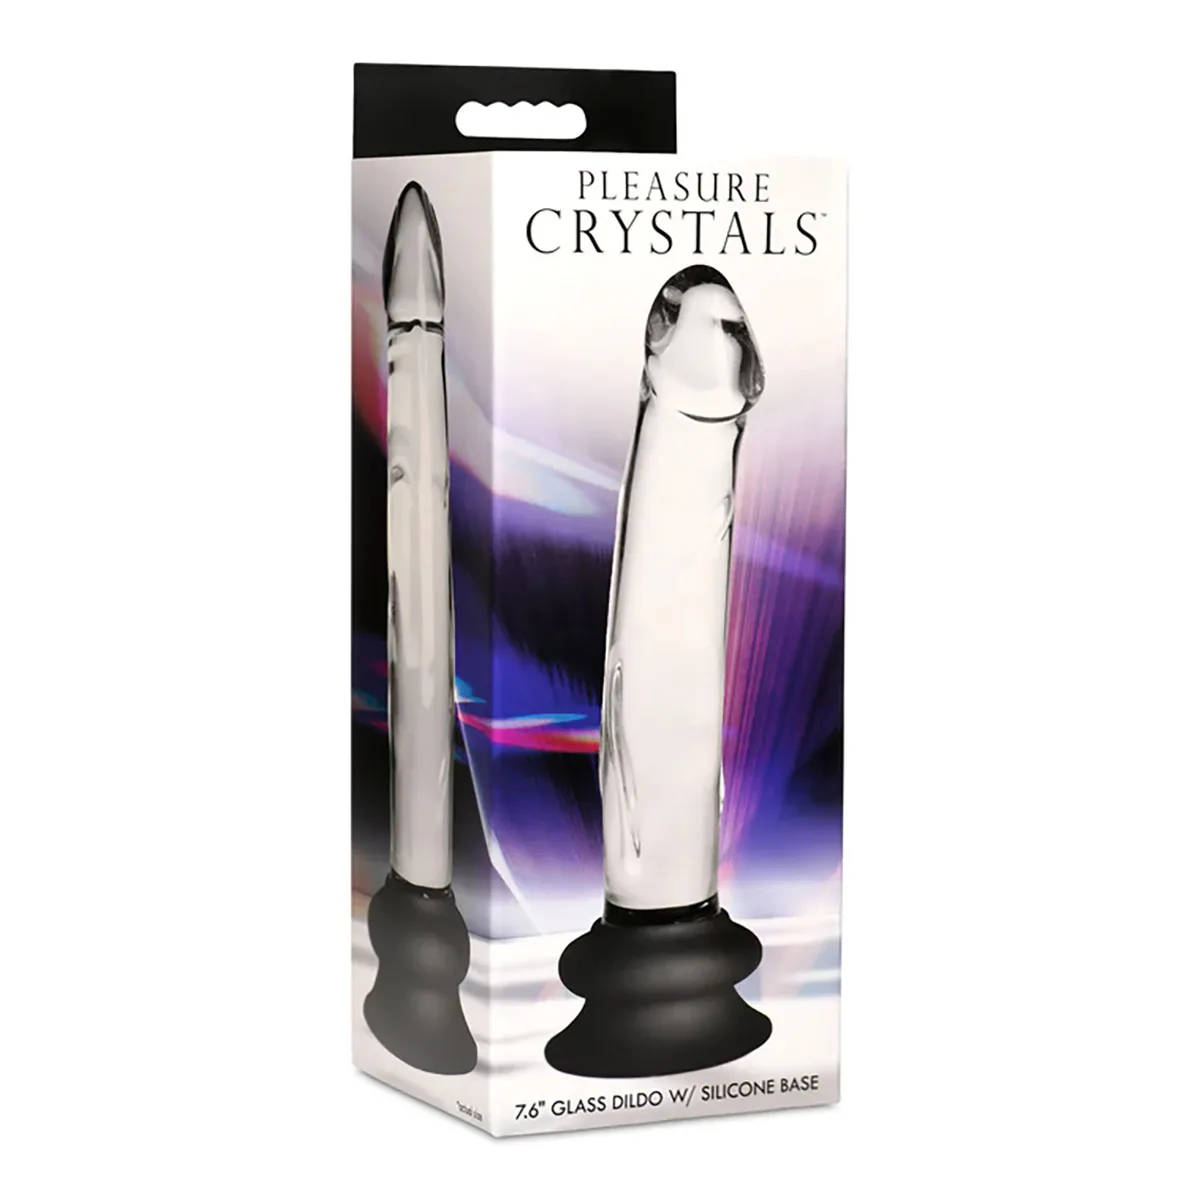 Pleasure-Crystals-7.6-Glass-Dildo-Silicone-Base-OPR-1070066-1